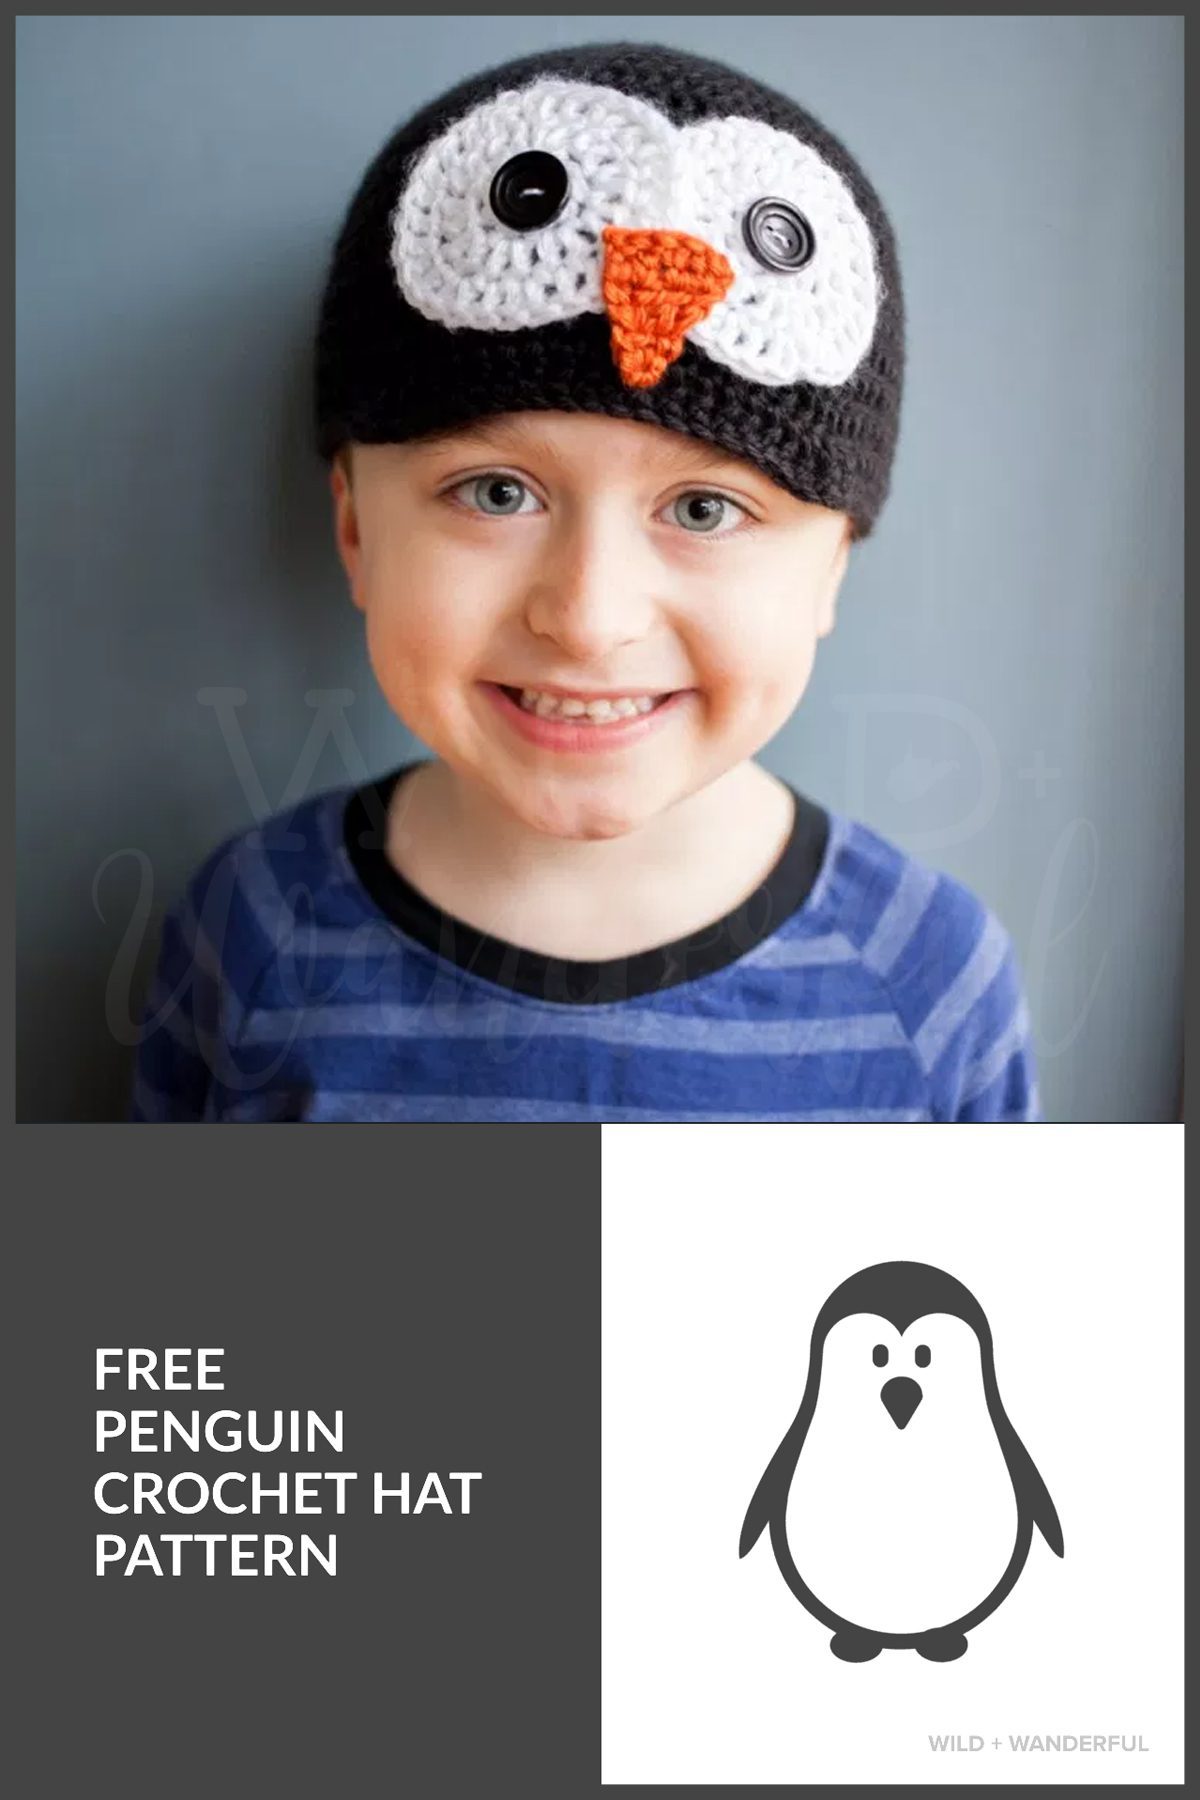 https://149353740.v2.pressablecdn.com/wp-content/uploads/2017/01/penguin-hat-cover-image.jpg